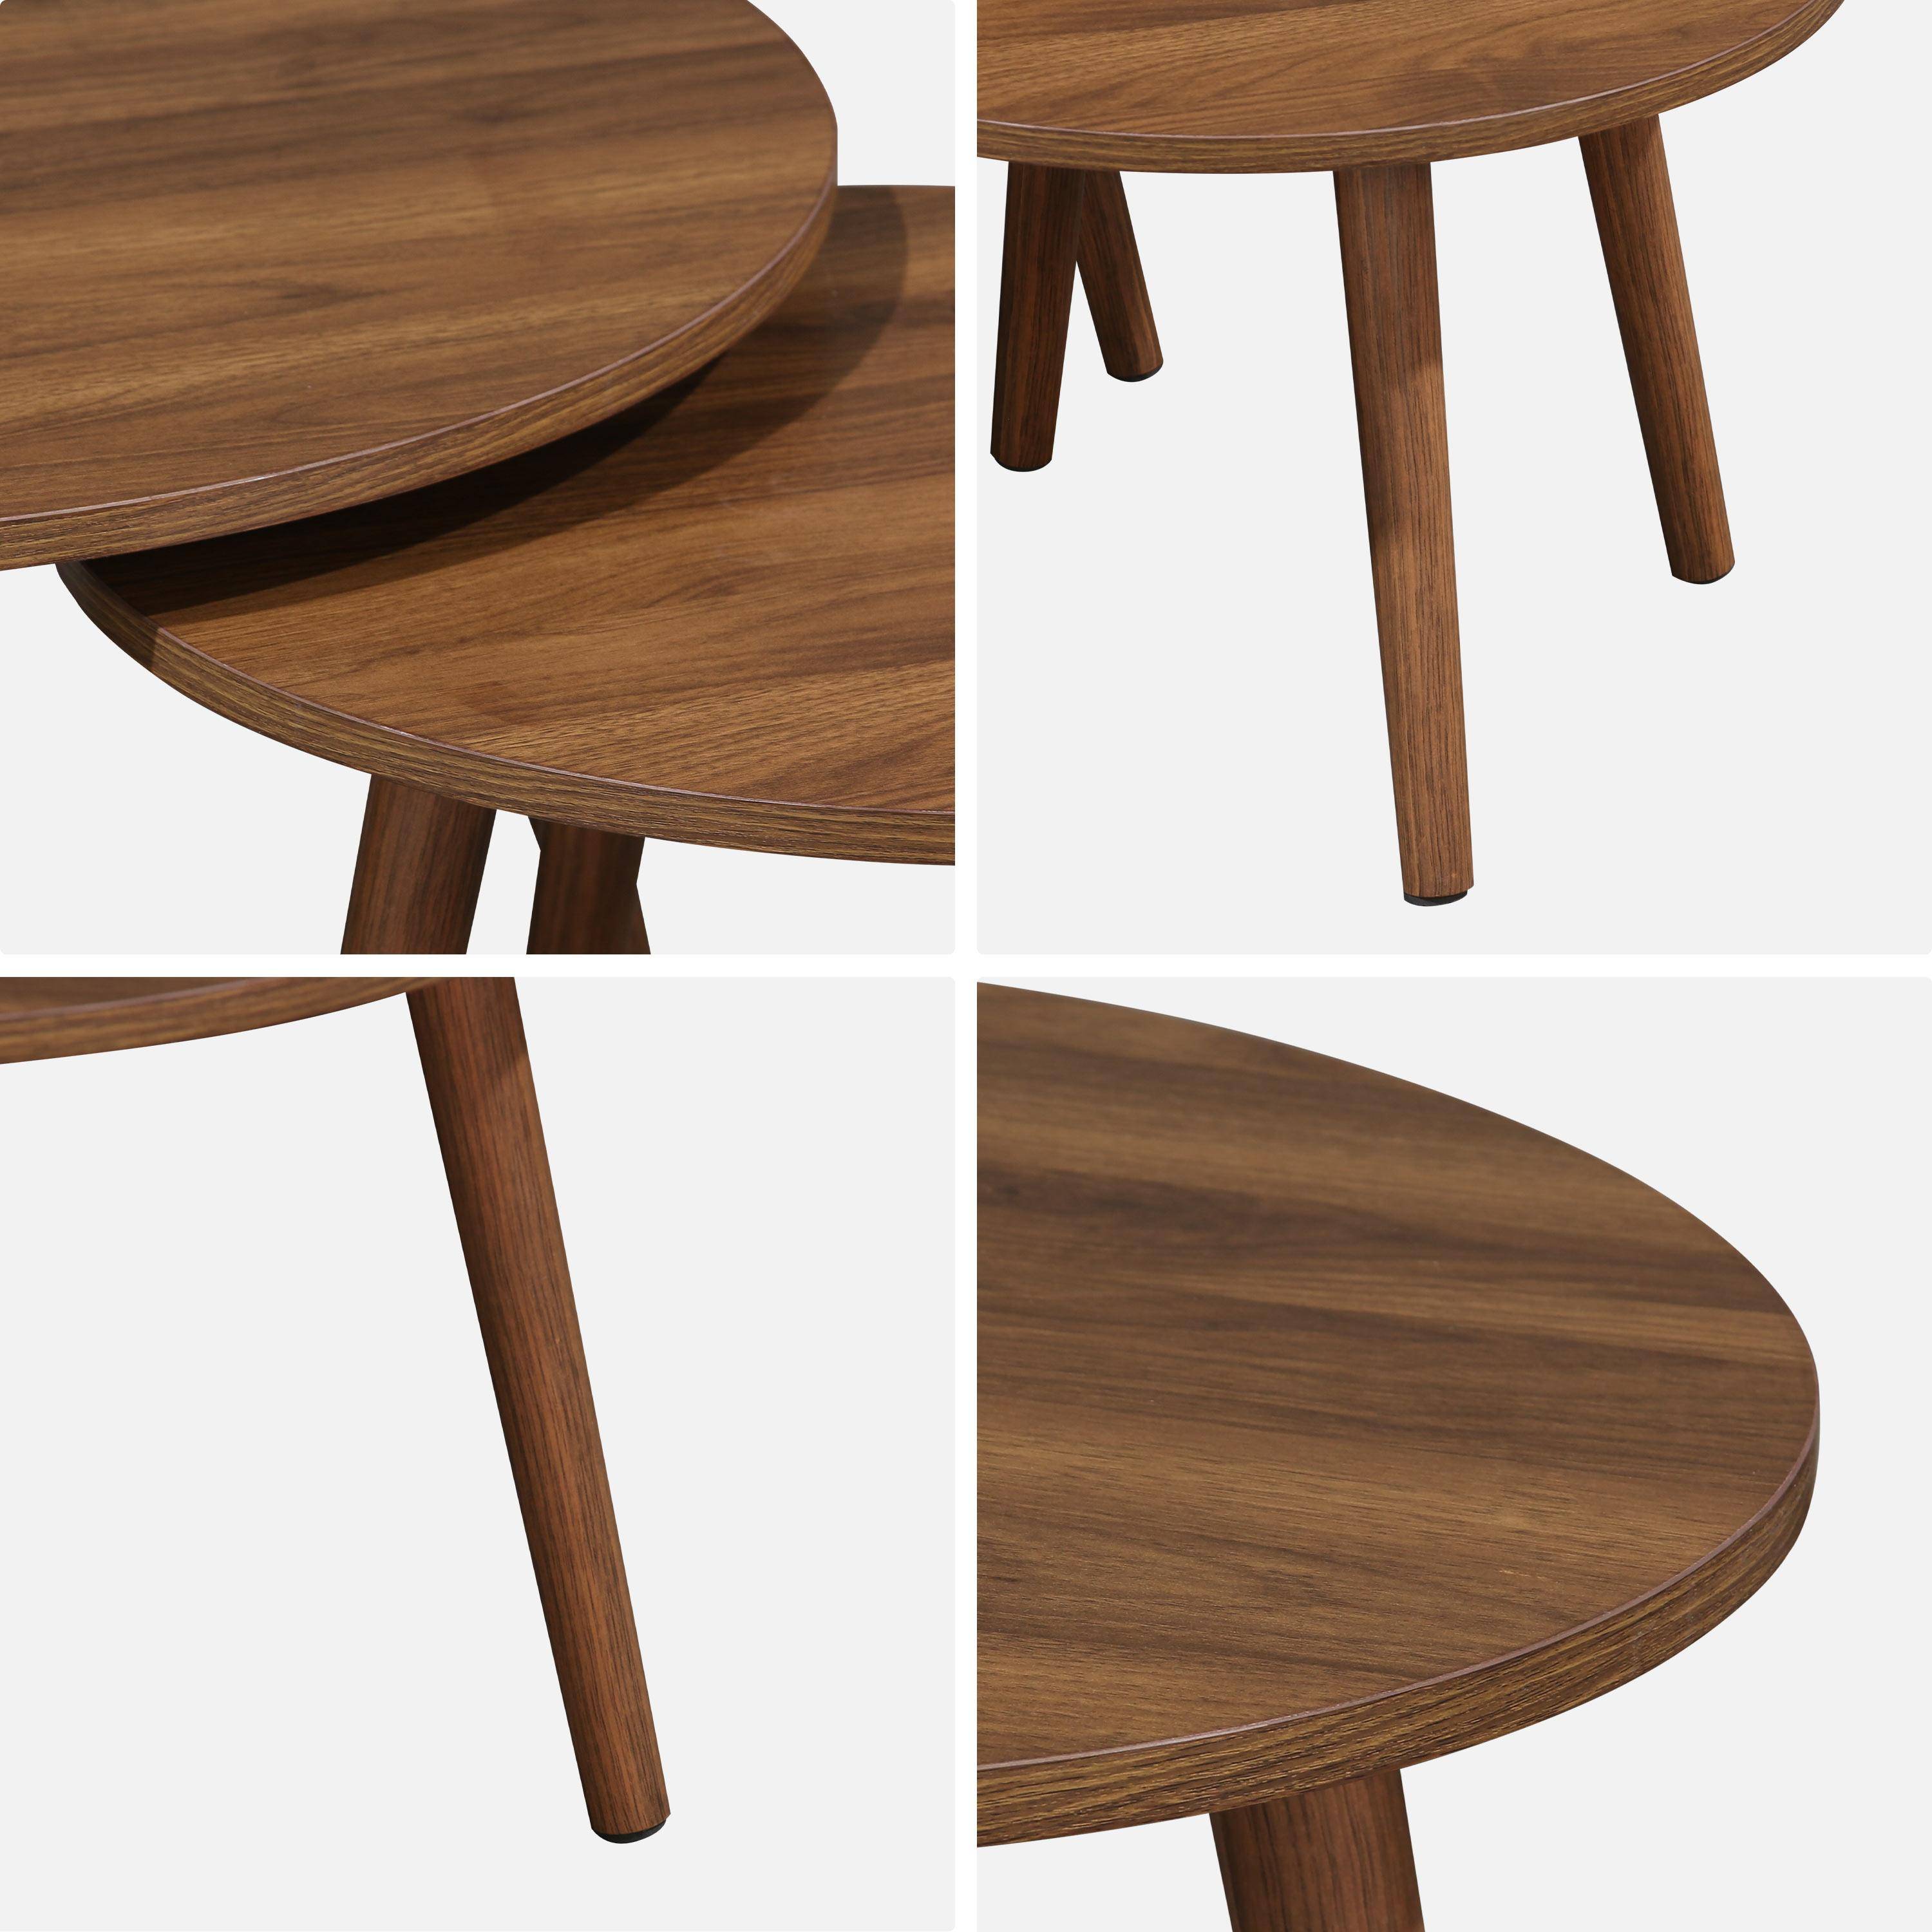 Pair of walnut wood-effect nesting coffee tables, 70x70x38cm & 50x50x34cm, Nepal Photo7